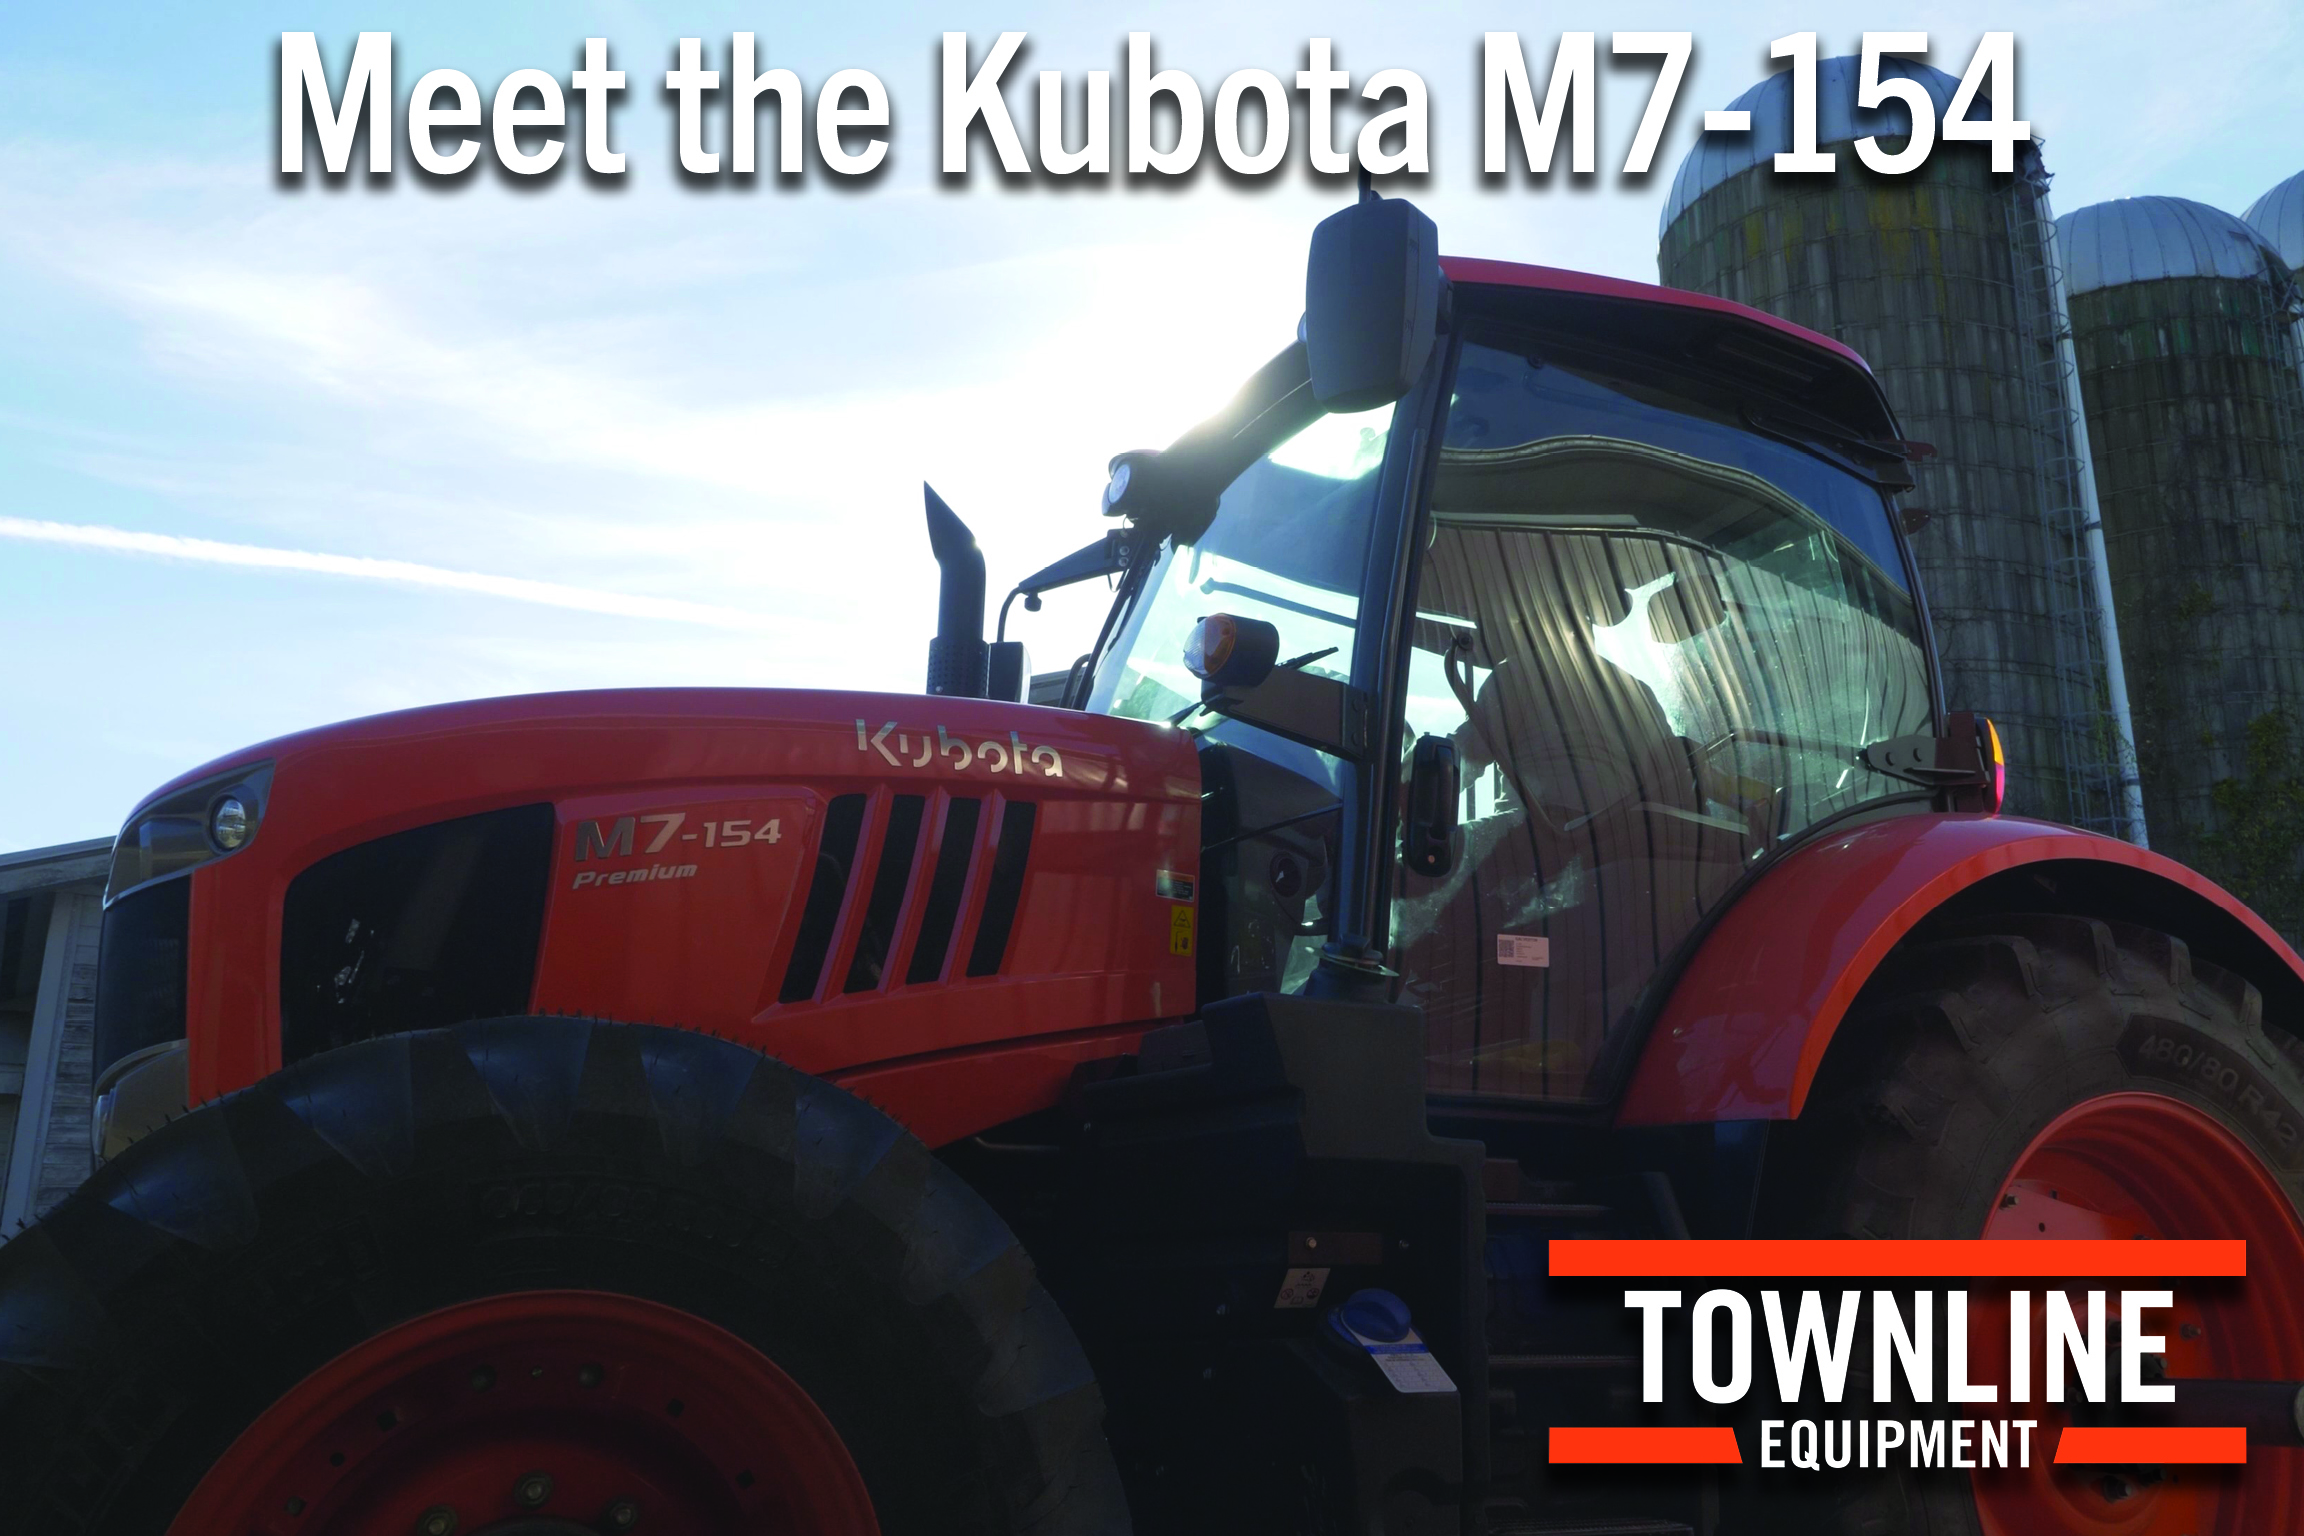 Meet the Kubota M7-154